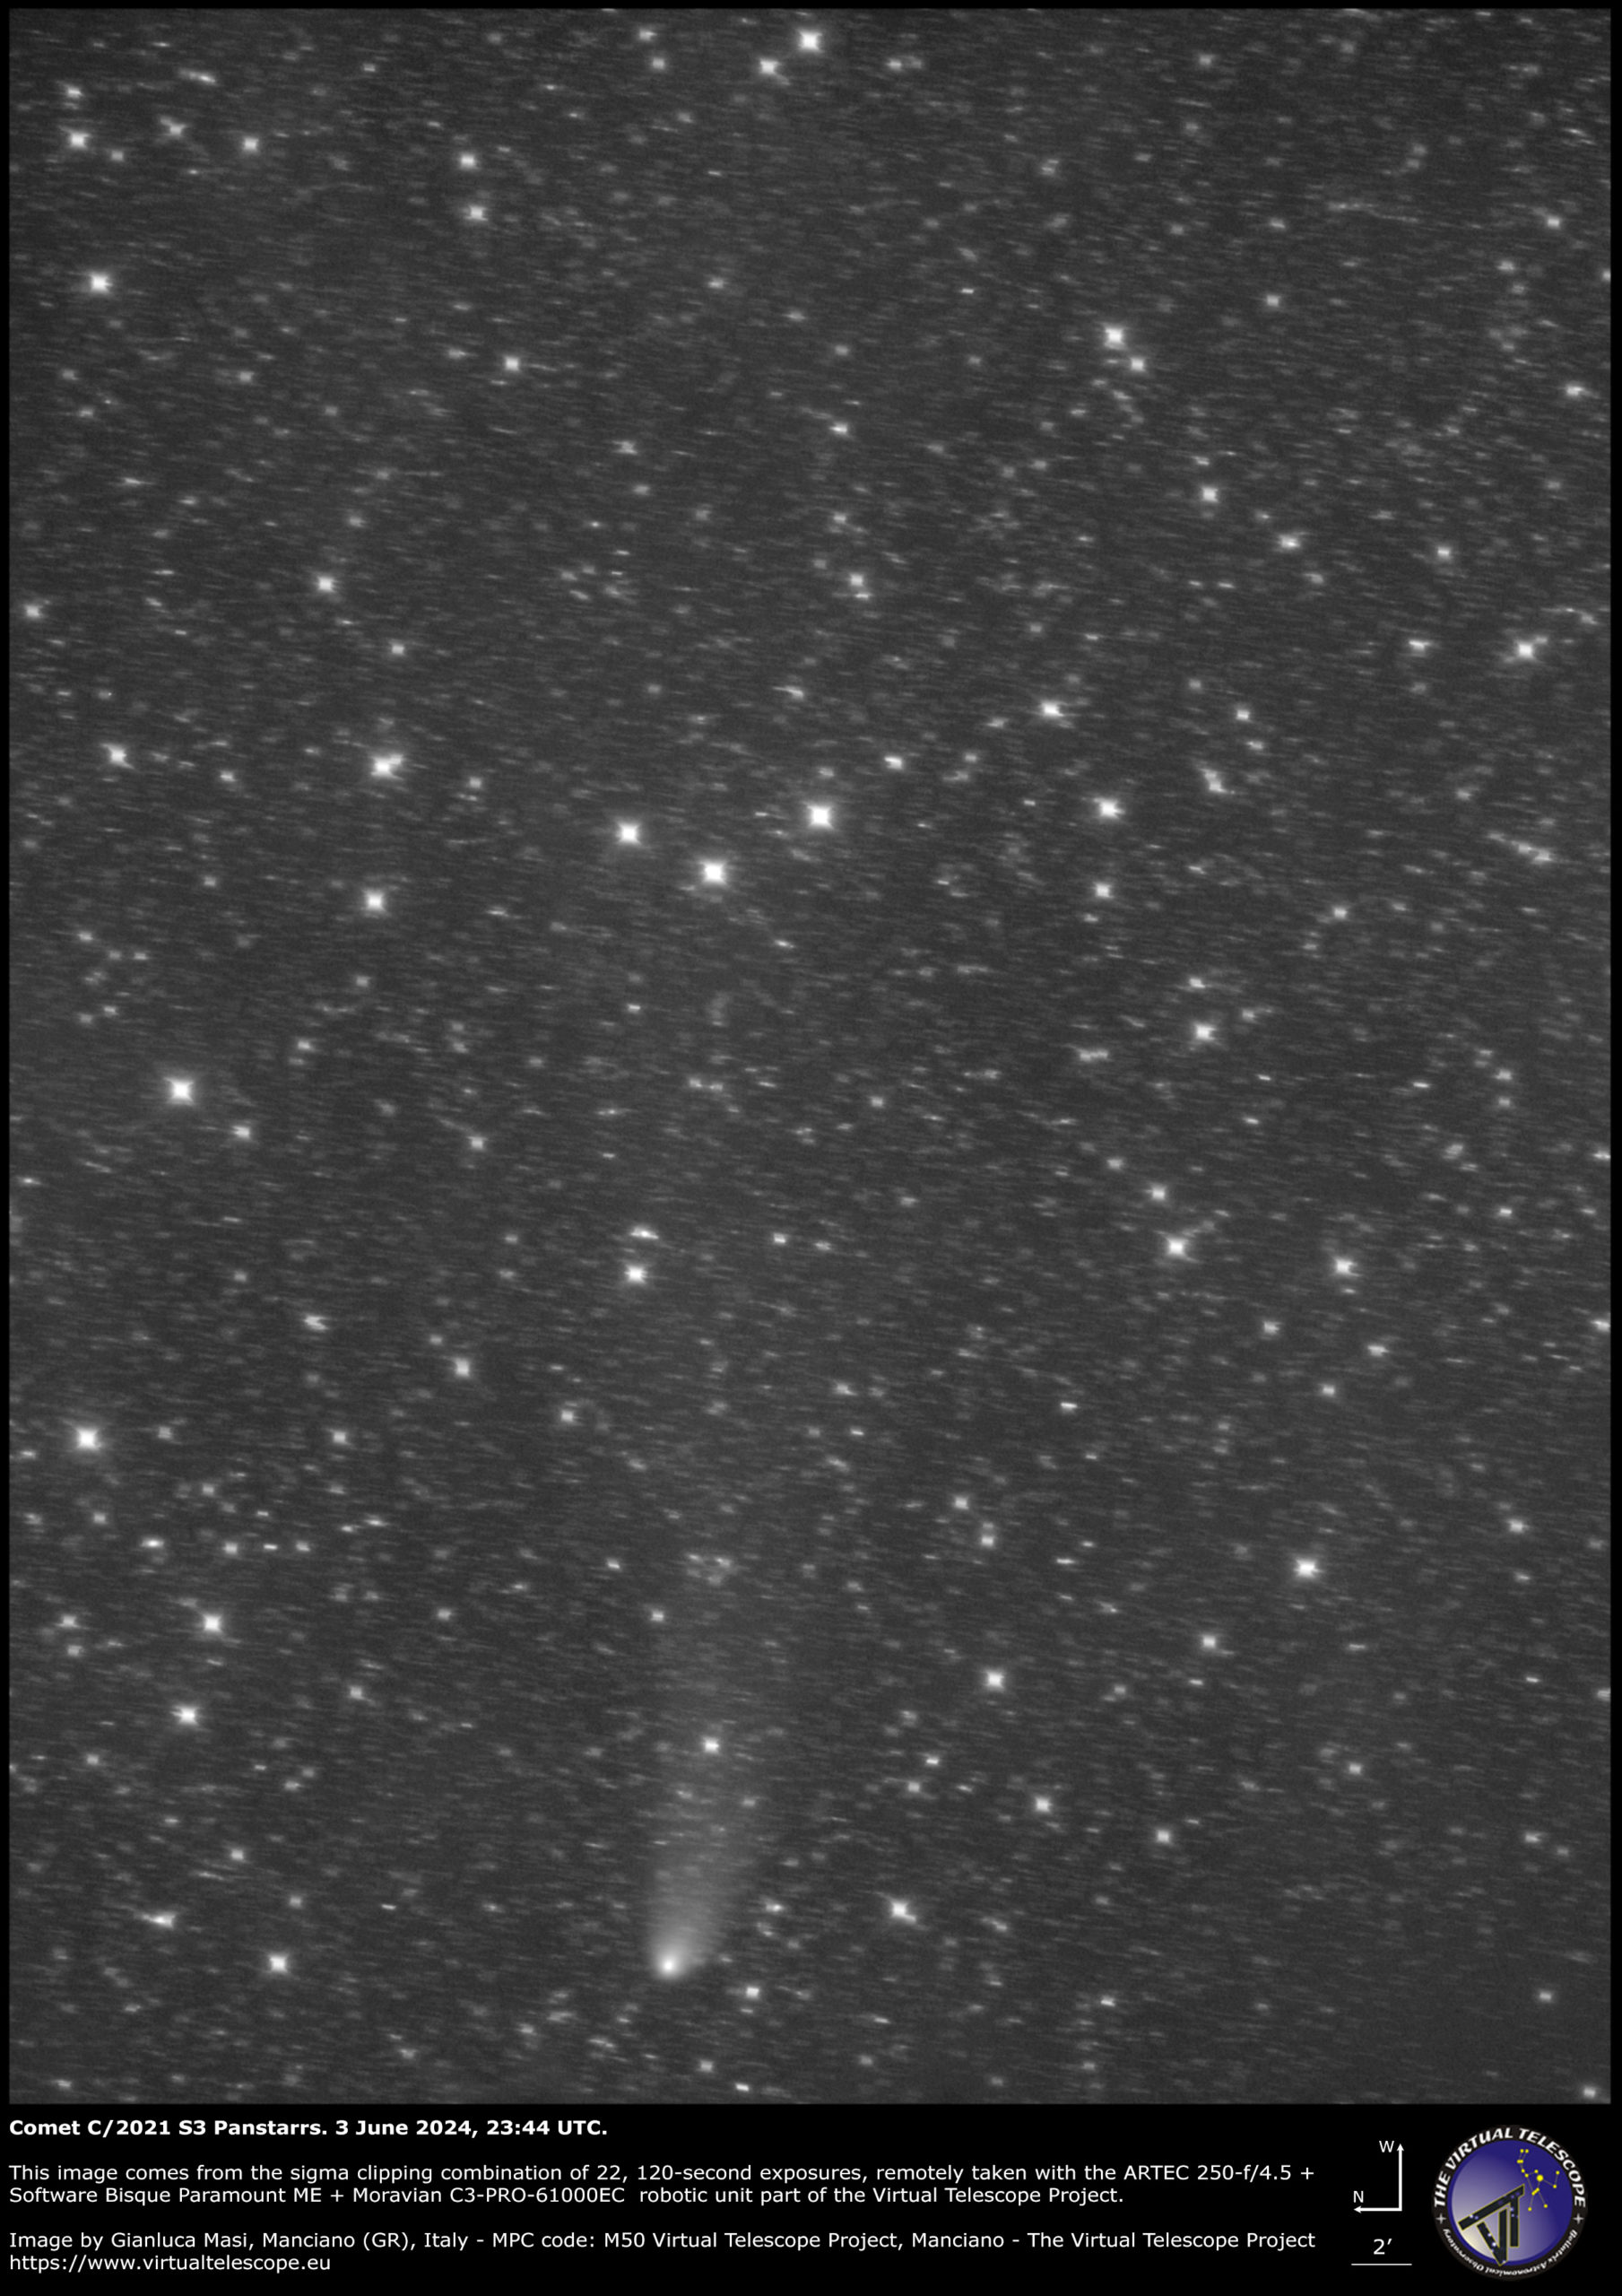 Comet C/2021 S3 Panstarrs: 3 June 2024.